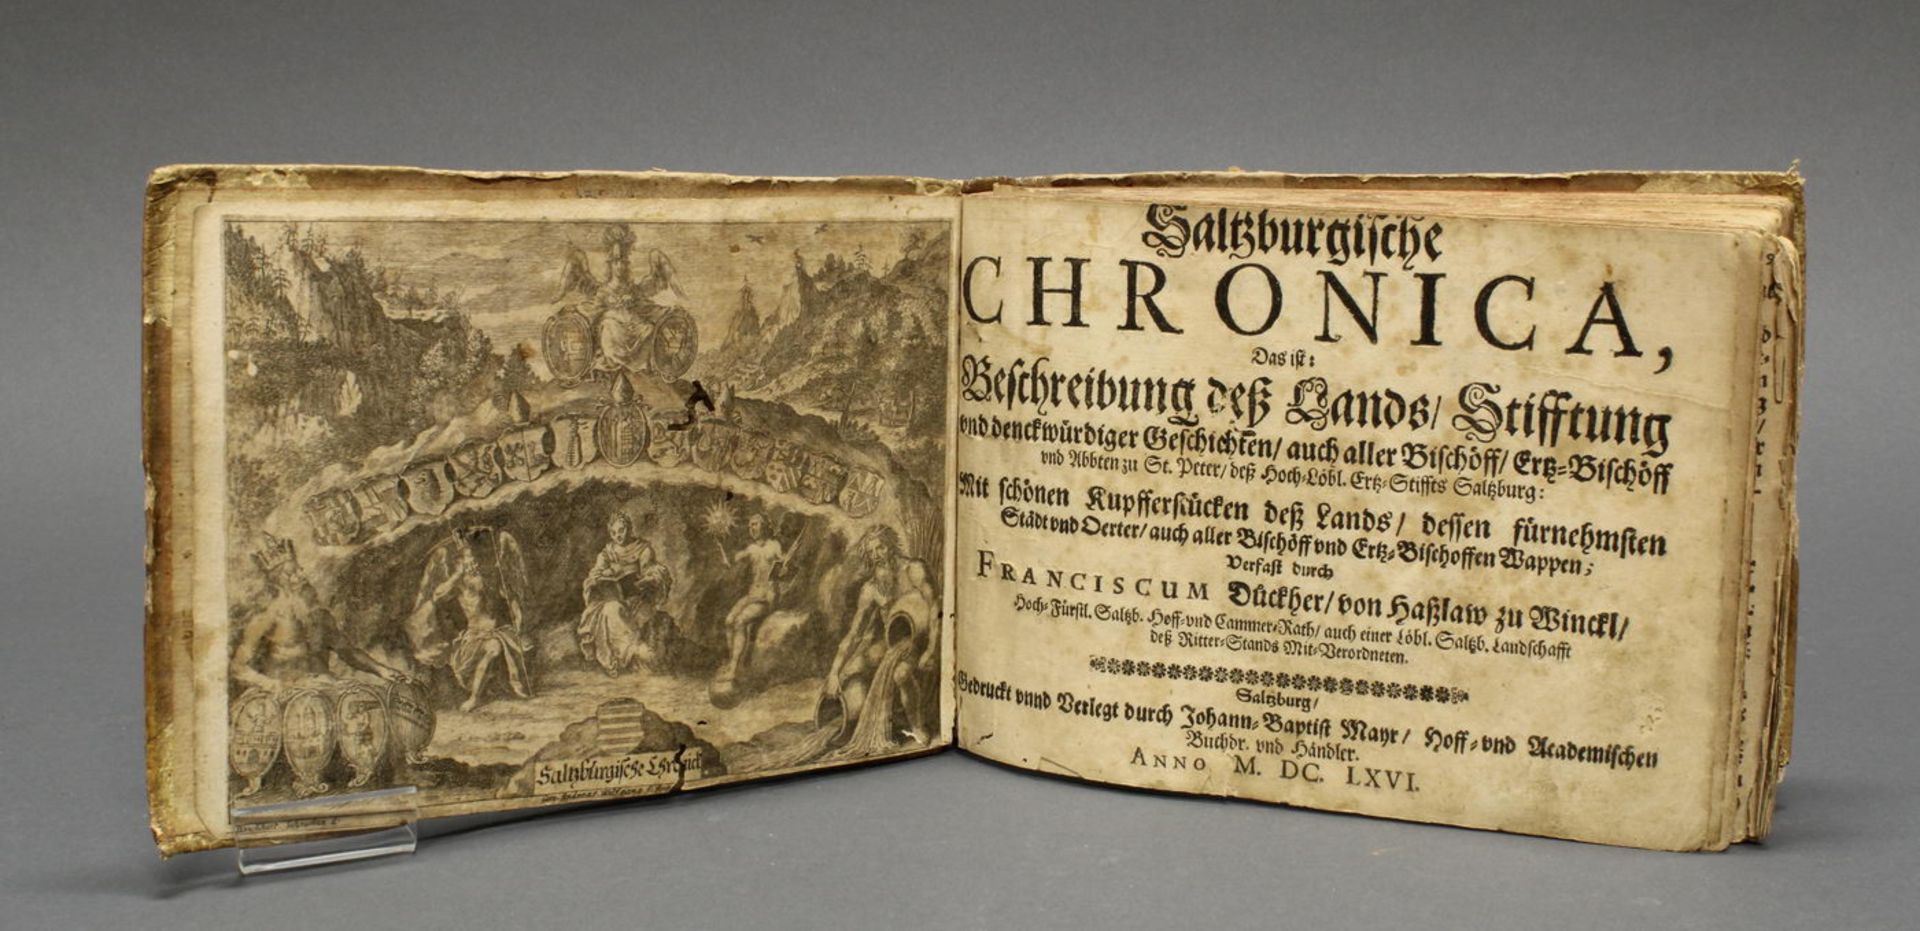 Franciscus Dückher von Haßlau zu Winckl, "Saltzburgische Chronica", Salzburg, 1666, bei Johann Ba